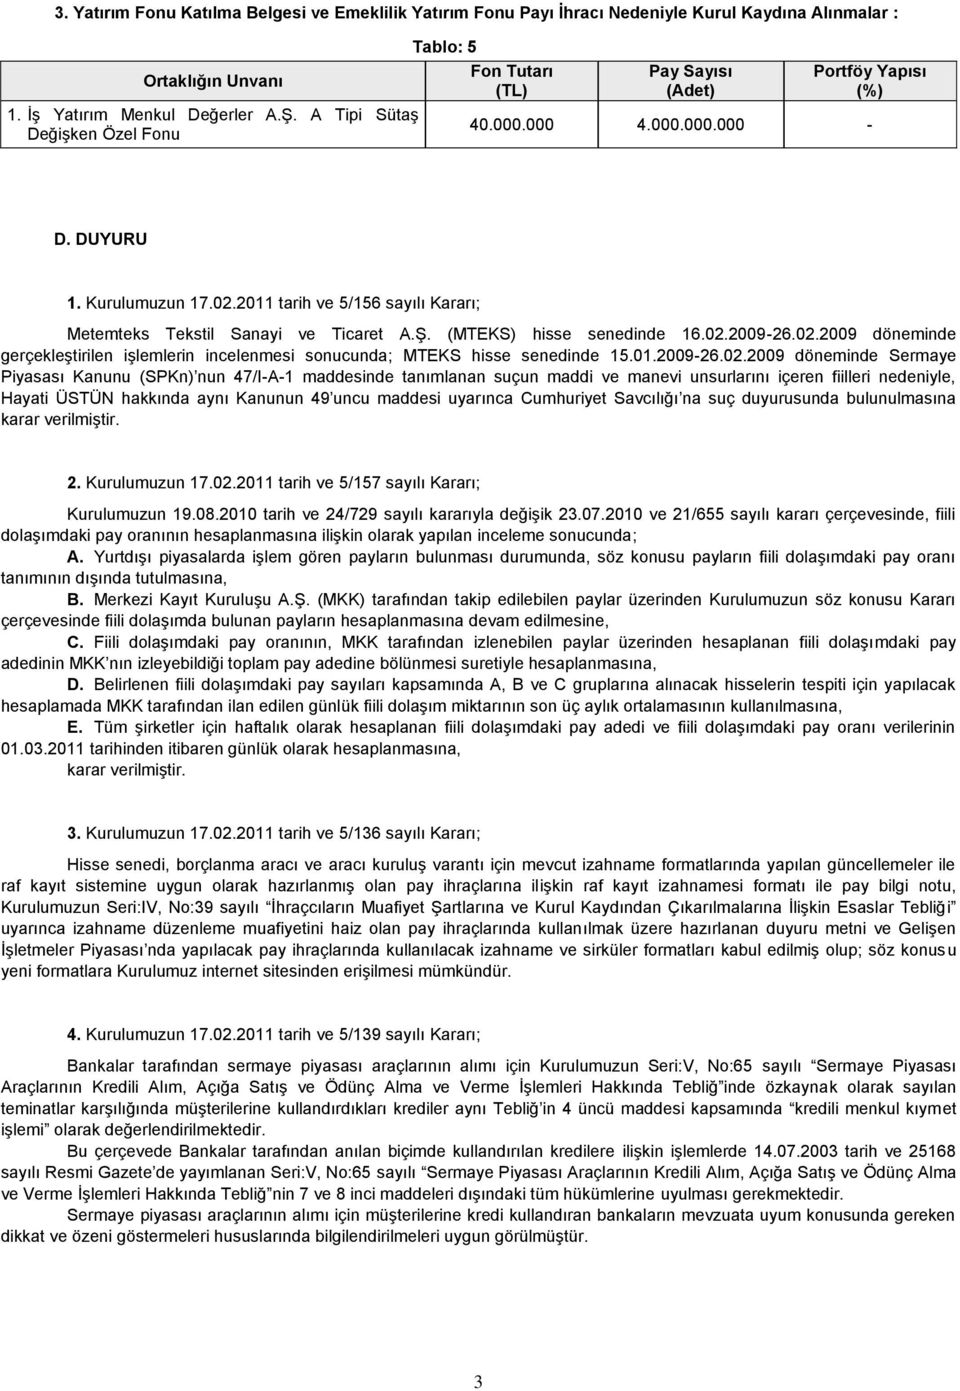 02.2009-26.02.2009 döneminde gerçekleştirilen işlemlerin incelenmesi sonucunda; MTEKS hisse senedinde 15.01.2009-26.02.2009 döneminde Sermaye Piyasası Kanunu (SPKn) nun 47/I-A-1 maddesinde tanımlanan